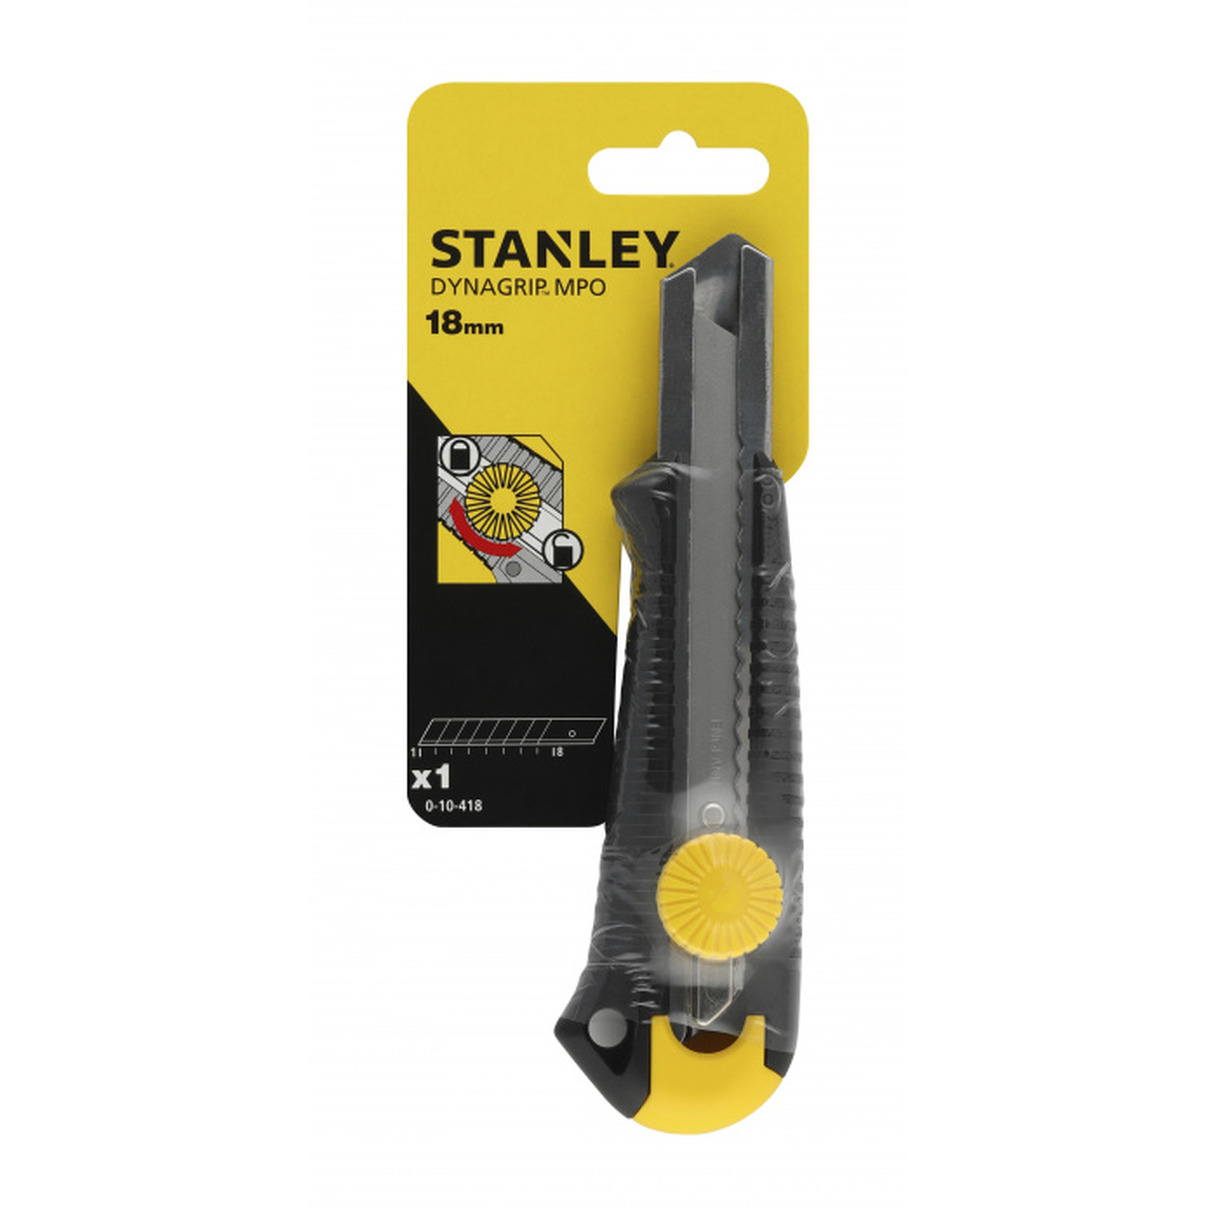 Нож Stanley Dynagrip Mpo 18мм вращ.прижим 0-10-418 стамеска stanley dynagrip pro 30 мм